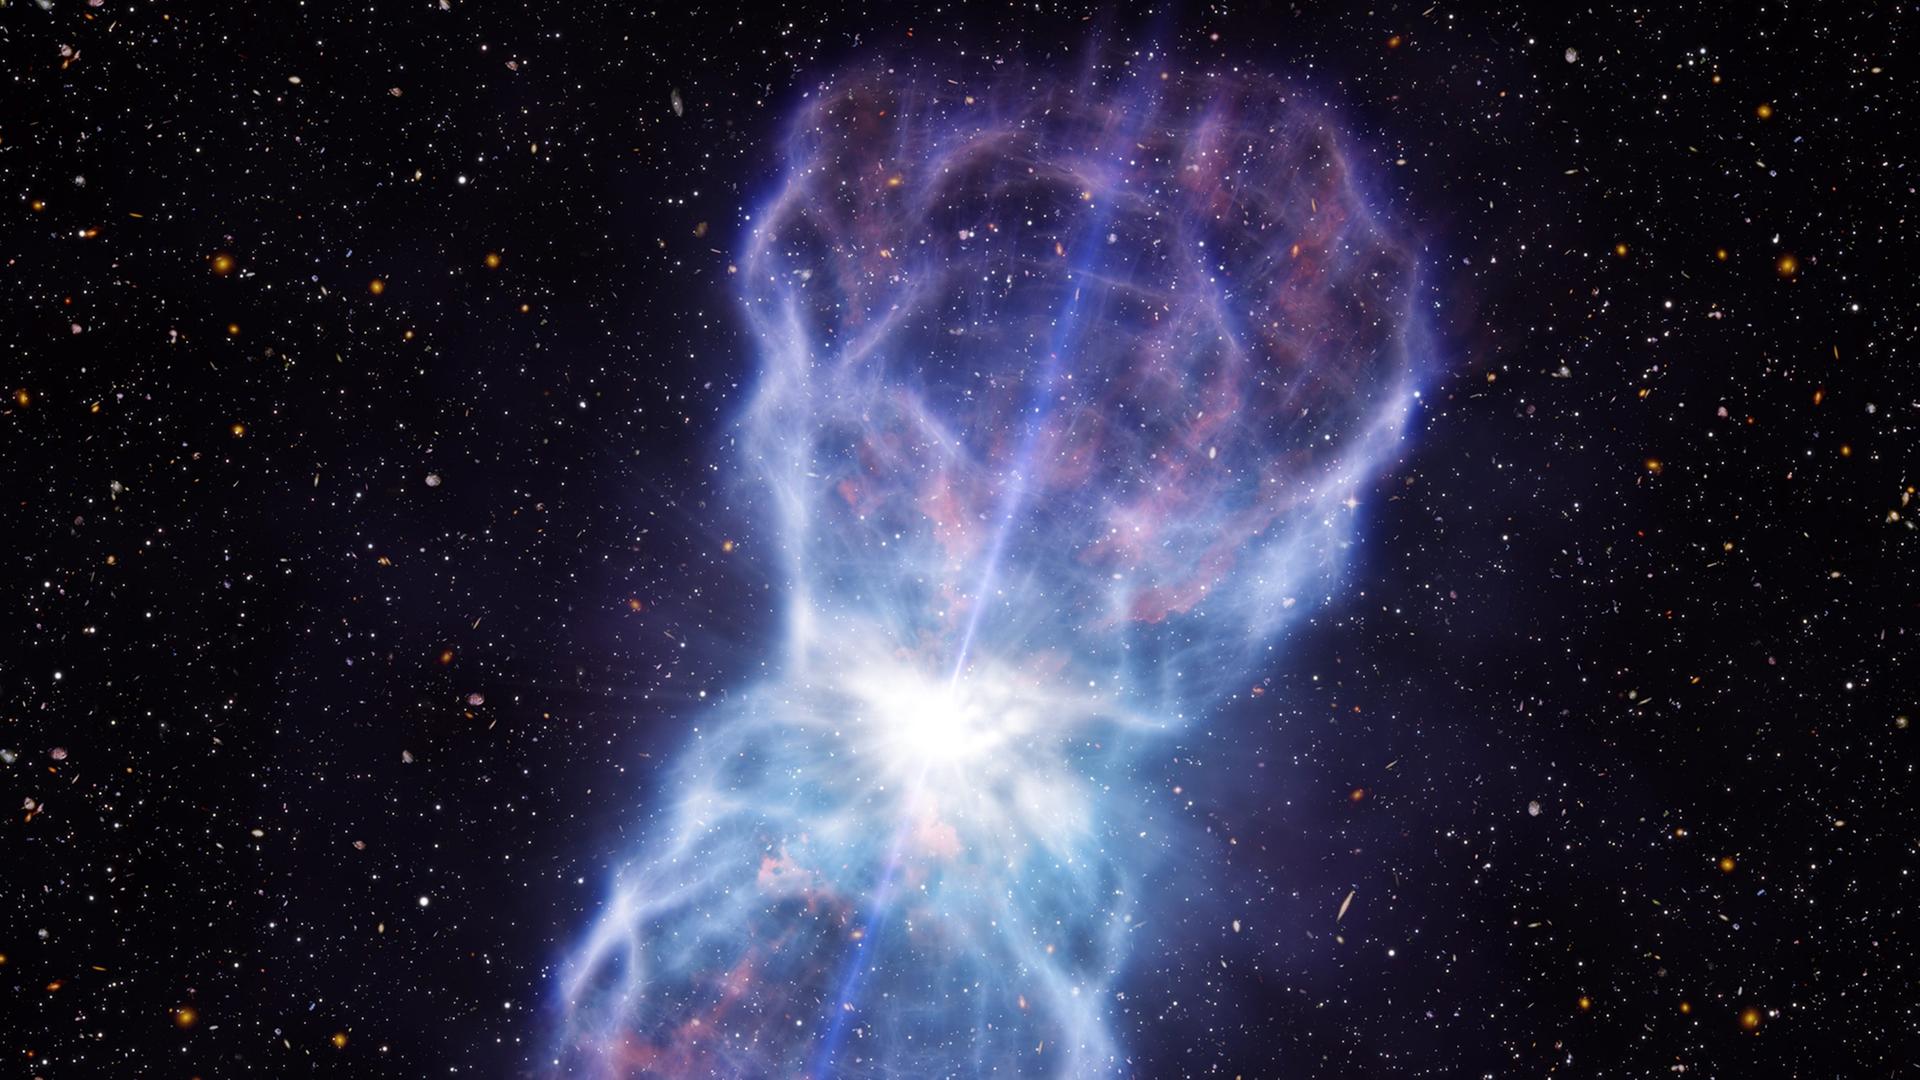 Der immense Materiefluss des Quasars (künstlerische Darstellung)